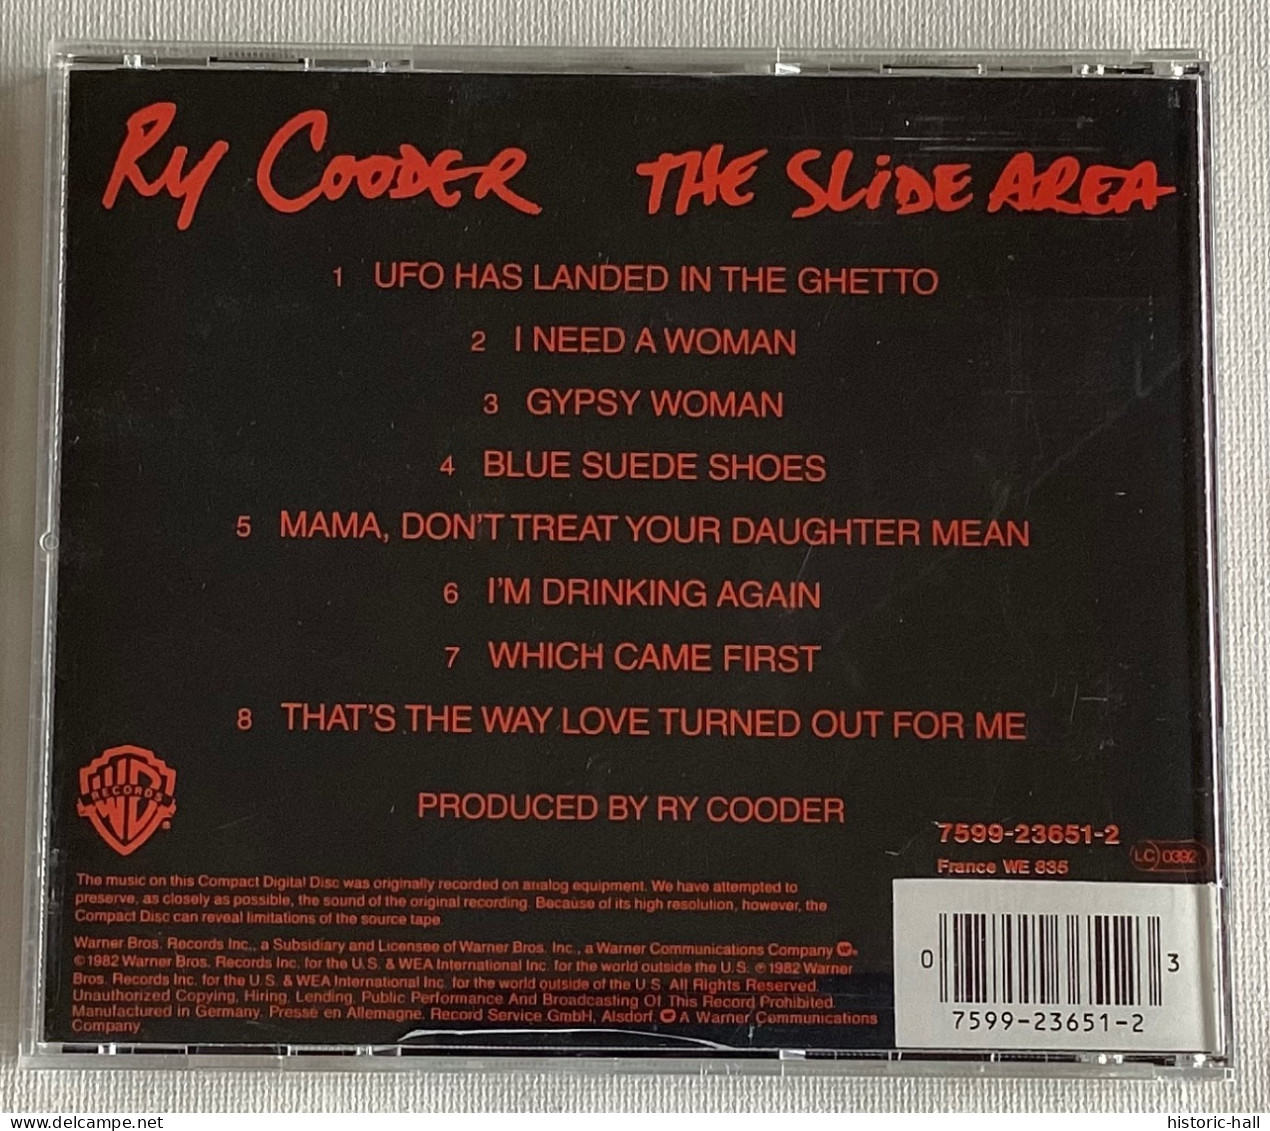 RY COODER - Slide Area - CD - 1982 - German Press - Blues